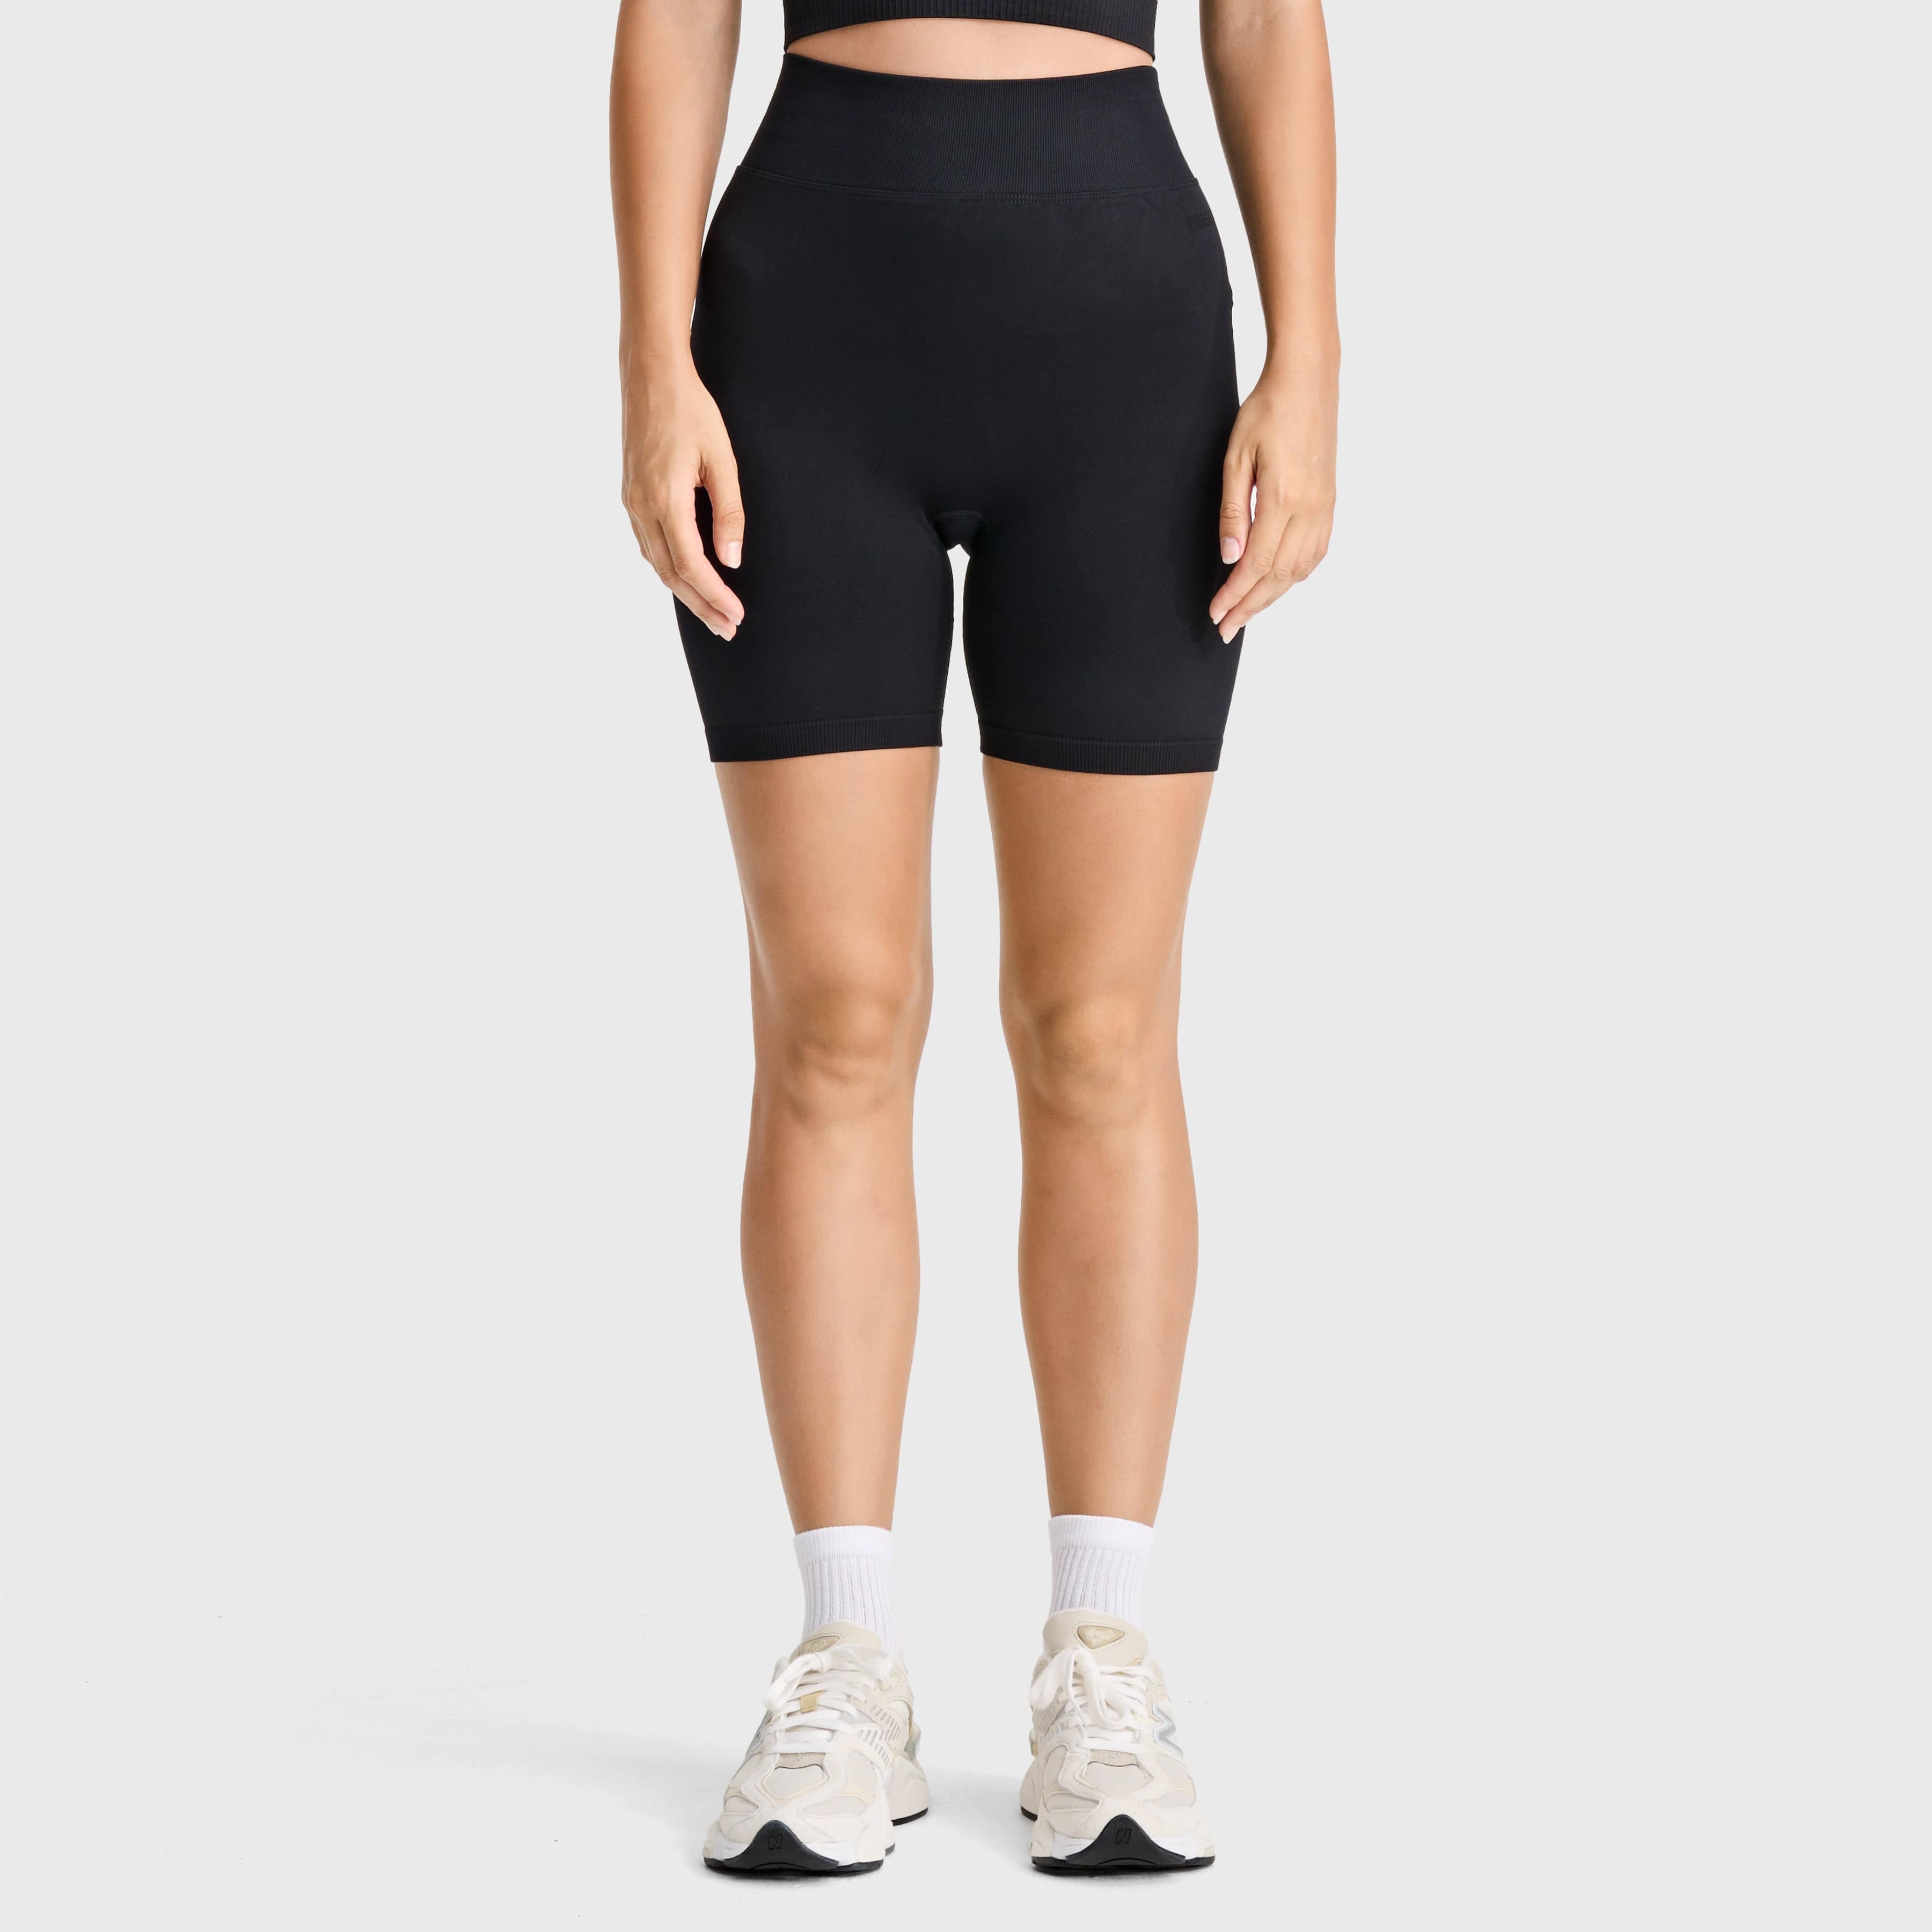 Seamless Biker Shorts- High Waisted - Black 3